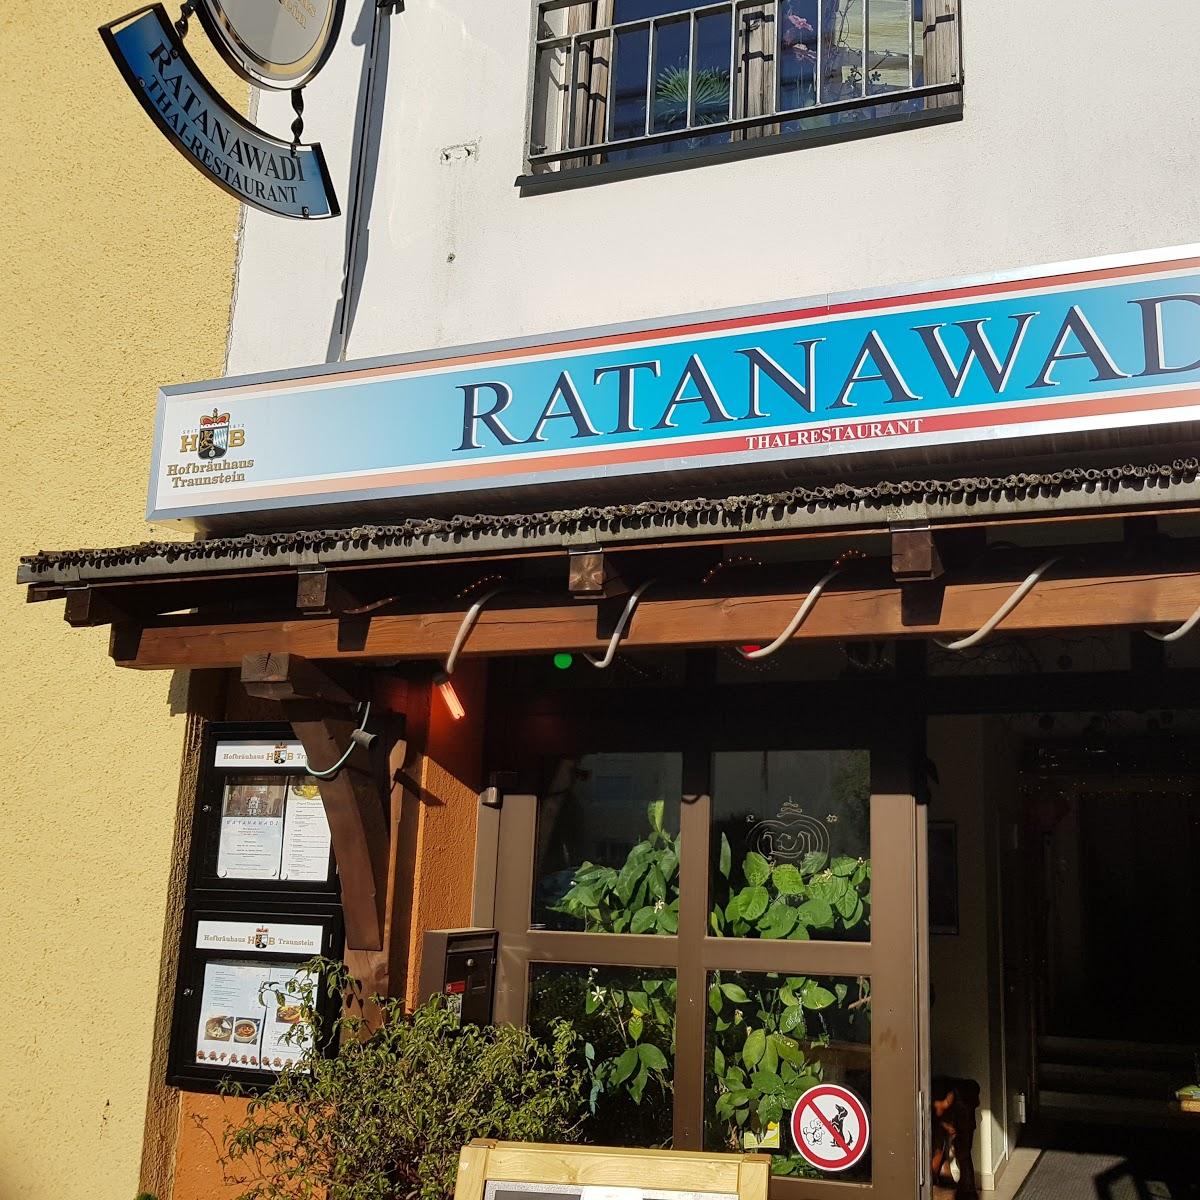 Ratanawadi